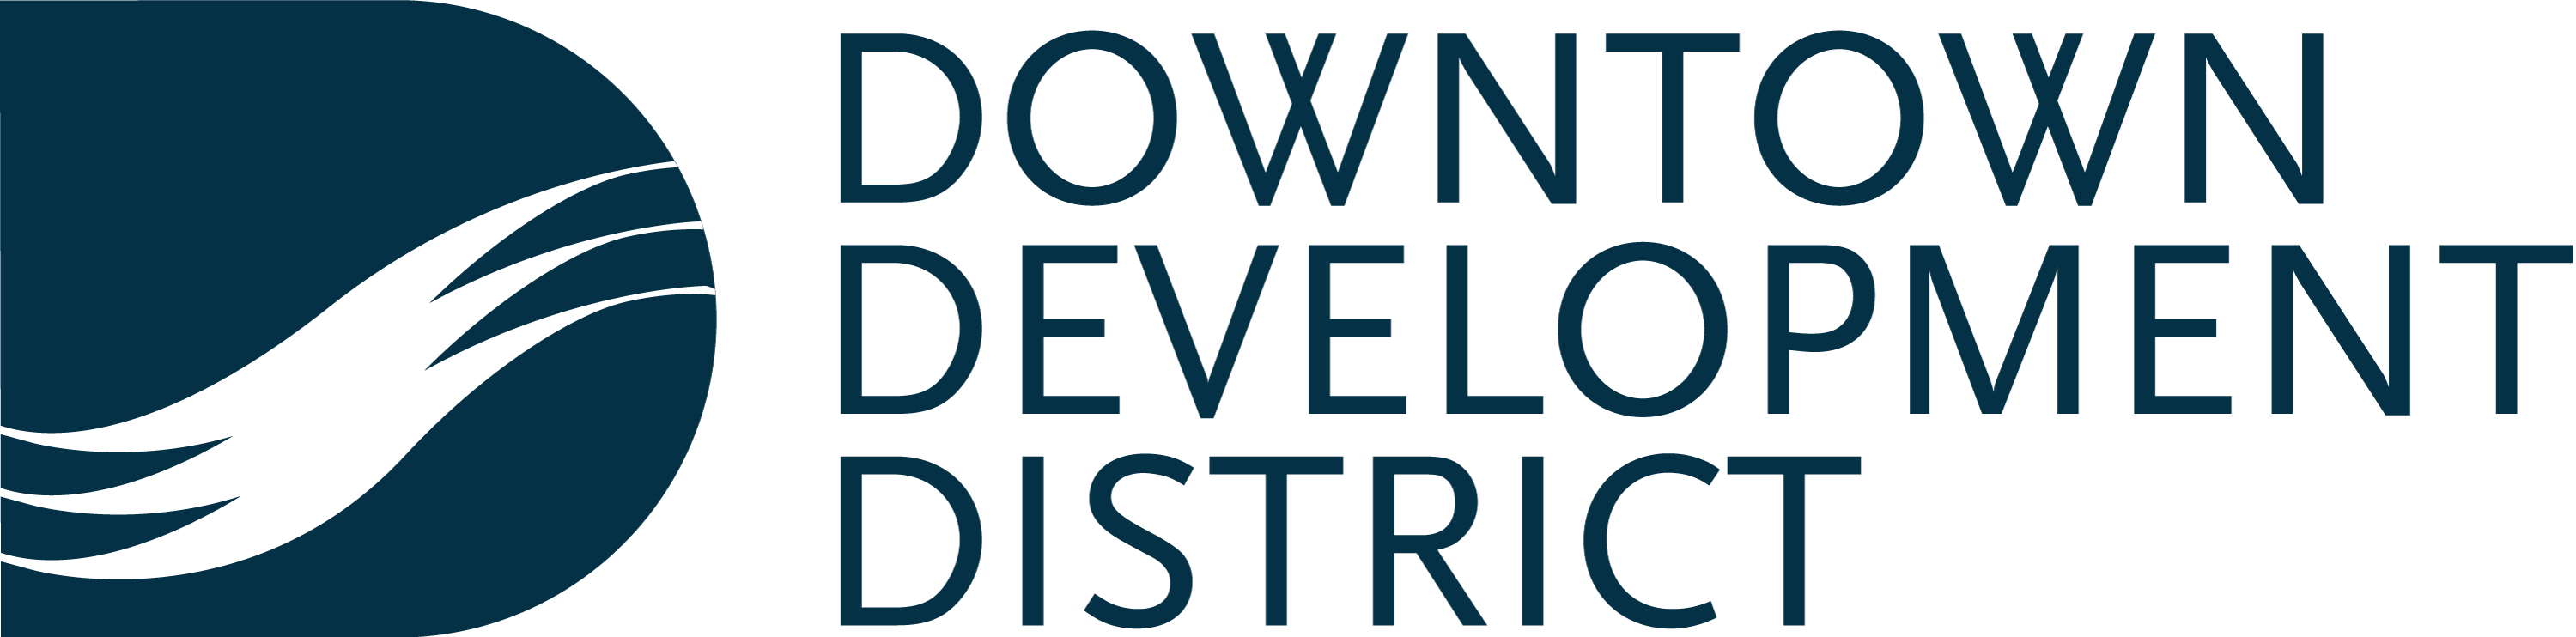 DDD logo